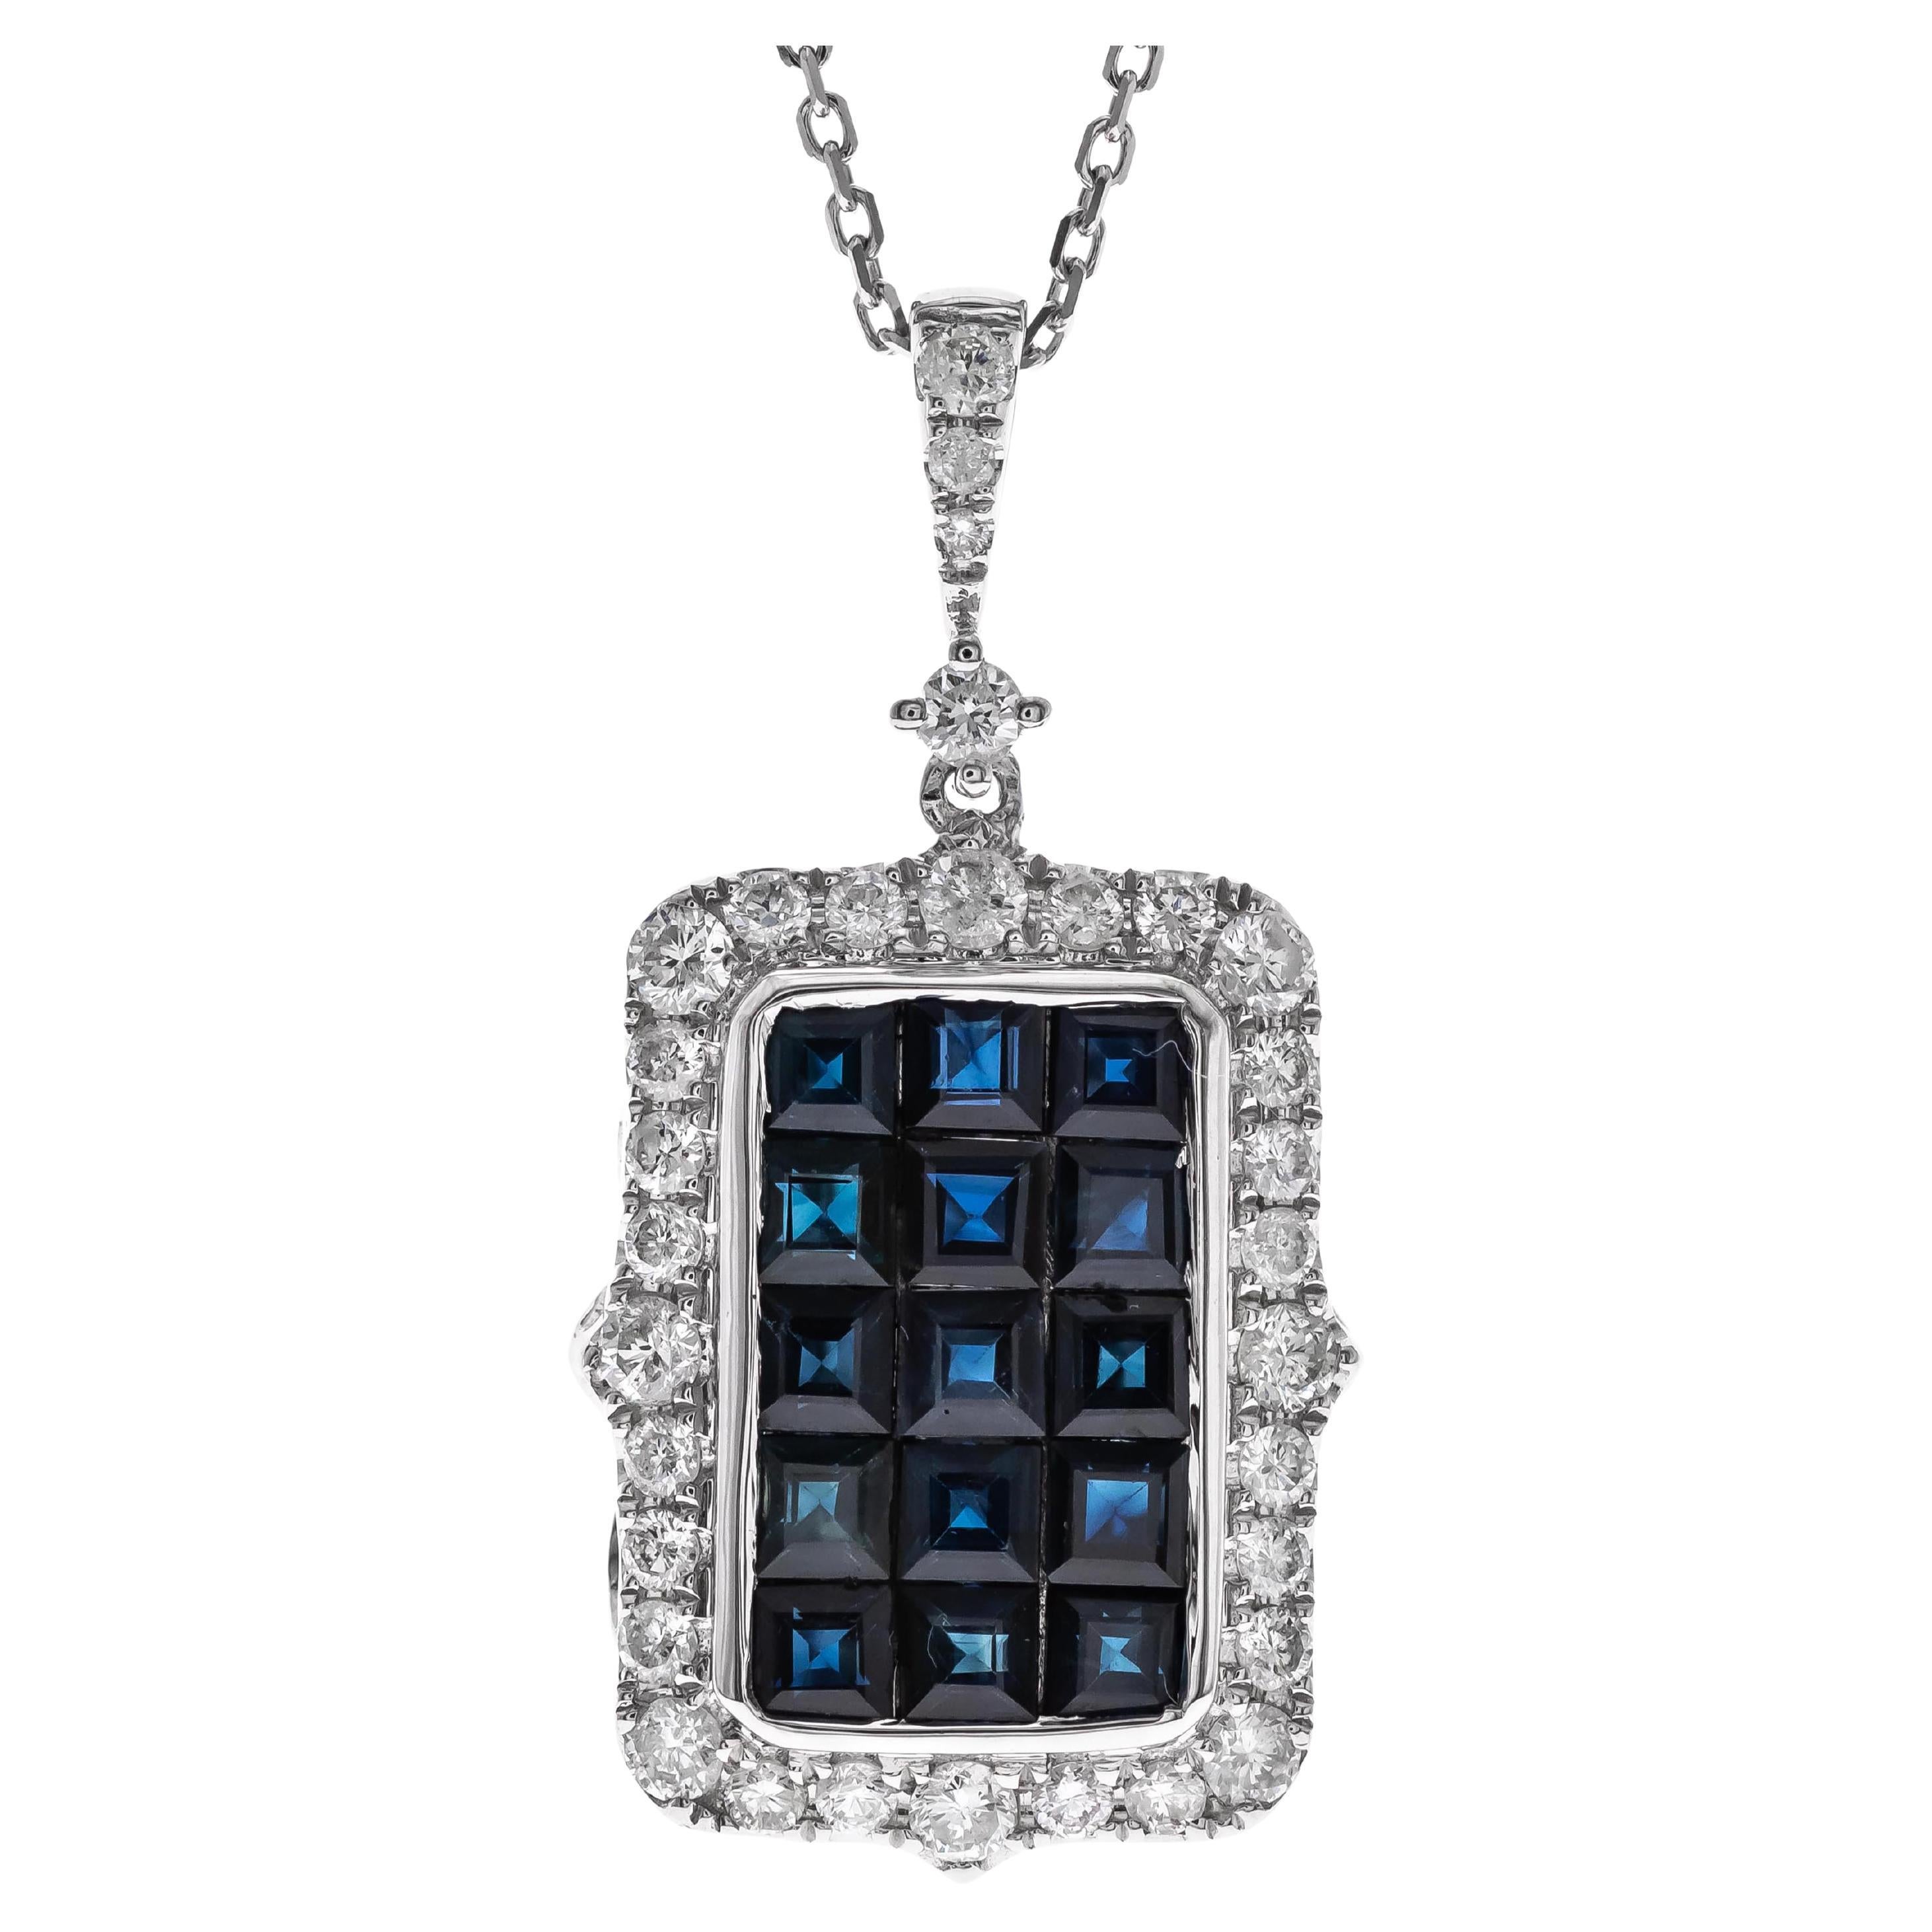 Pendentif en or blanc 14 carats avec saphir bleu taille carrée de 2,25 carats et diamants accentués